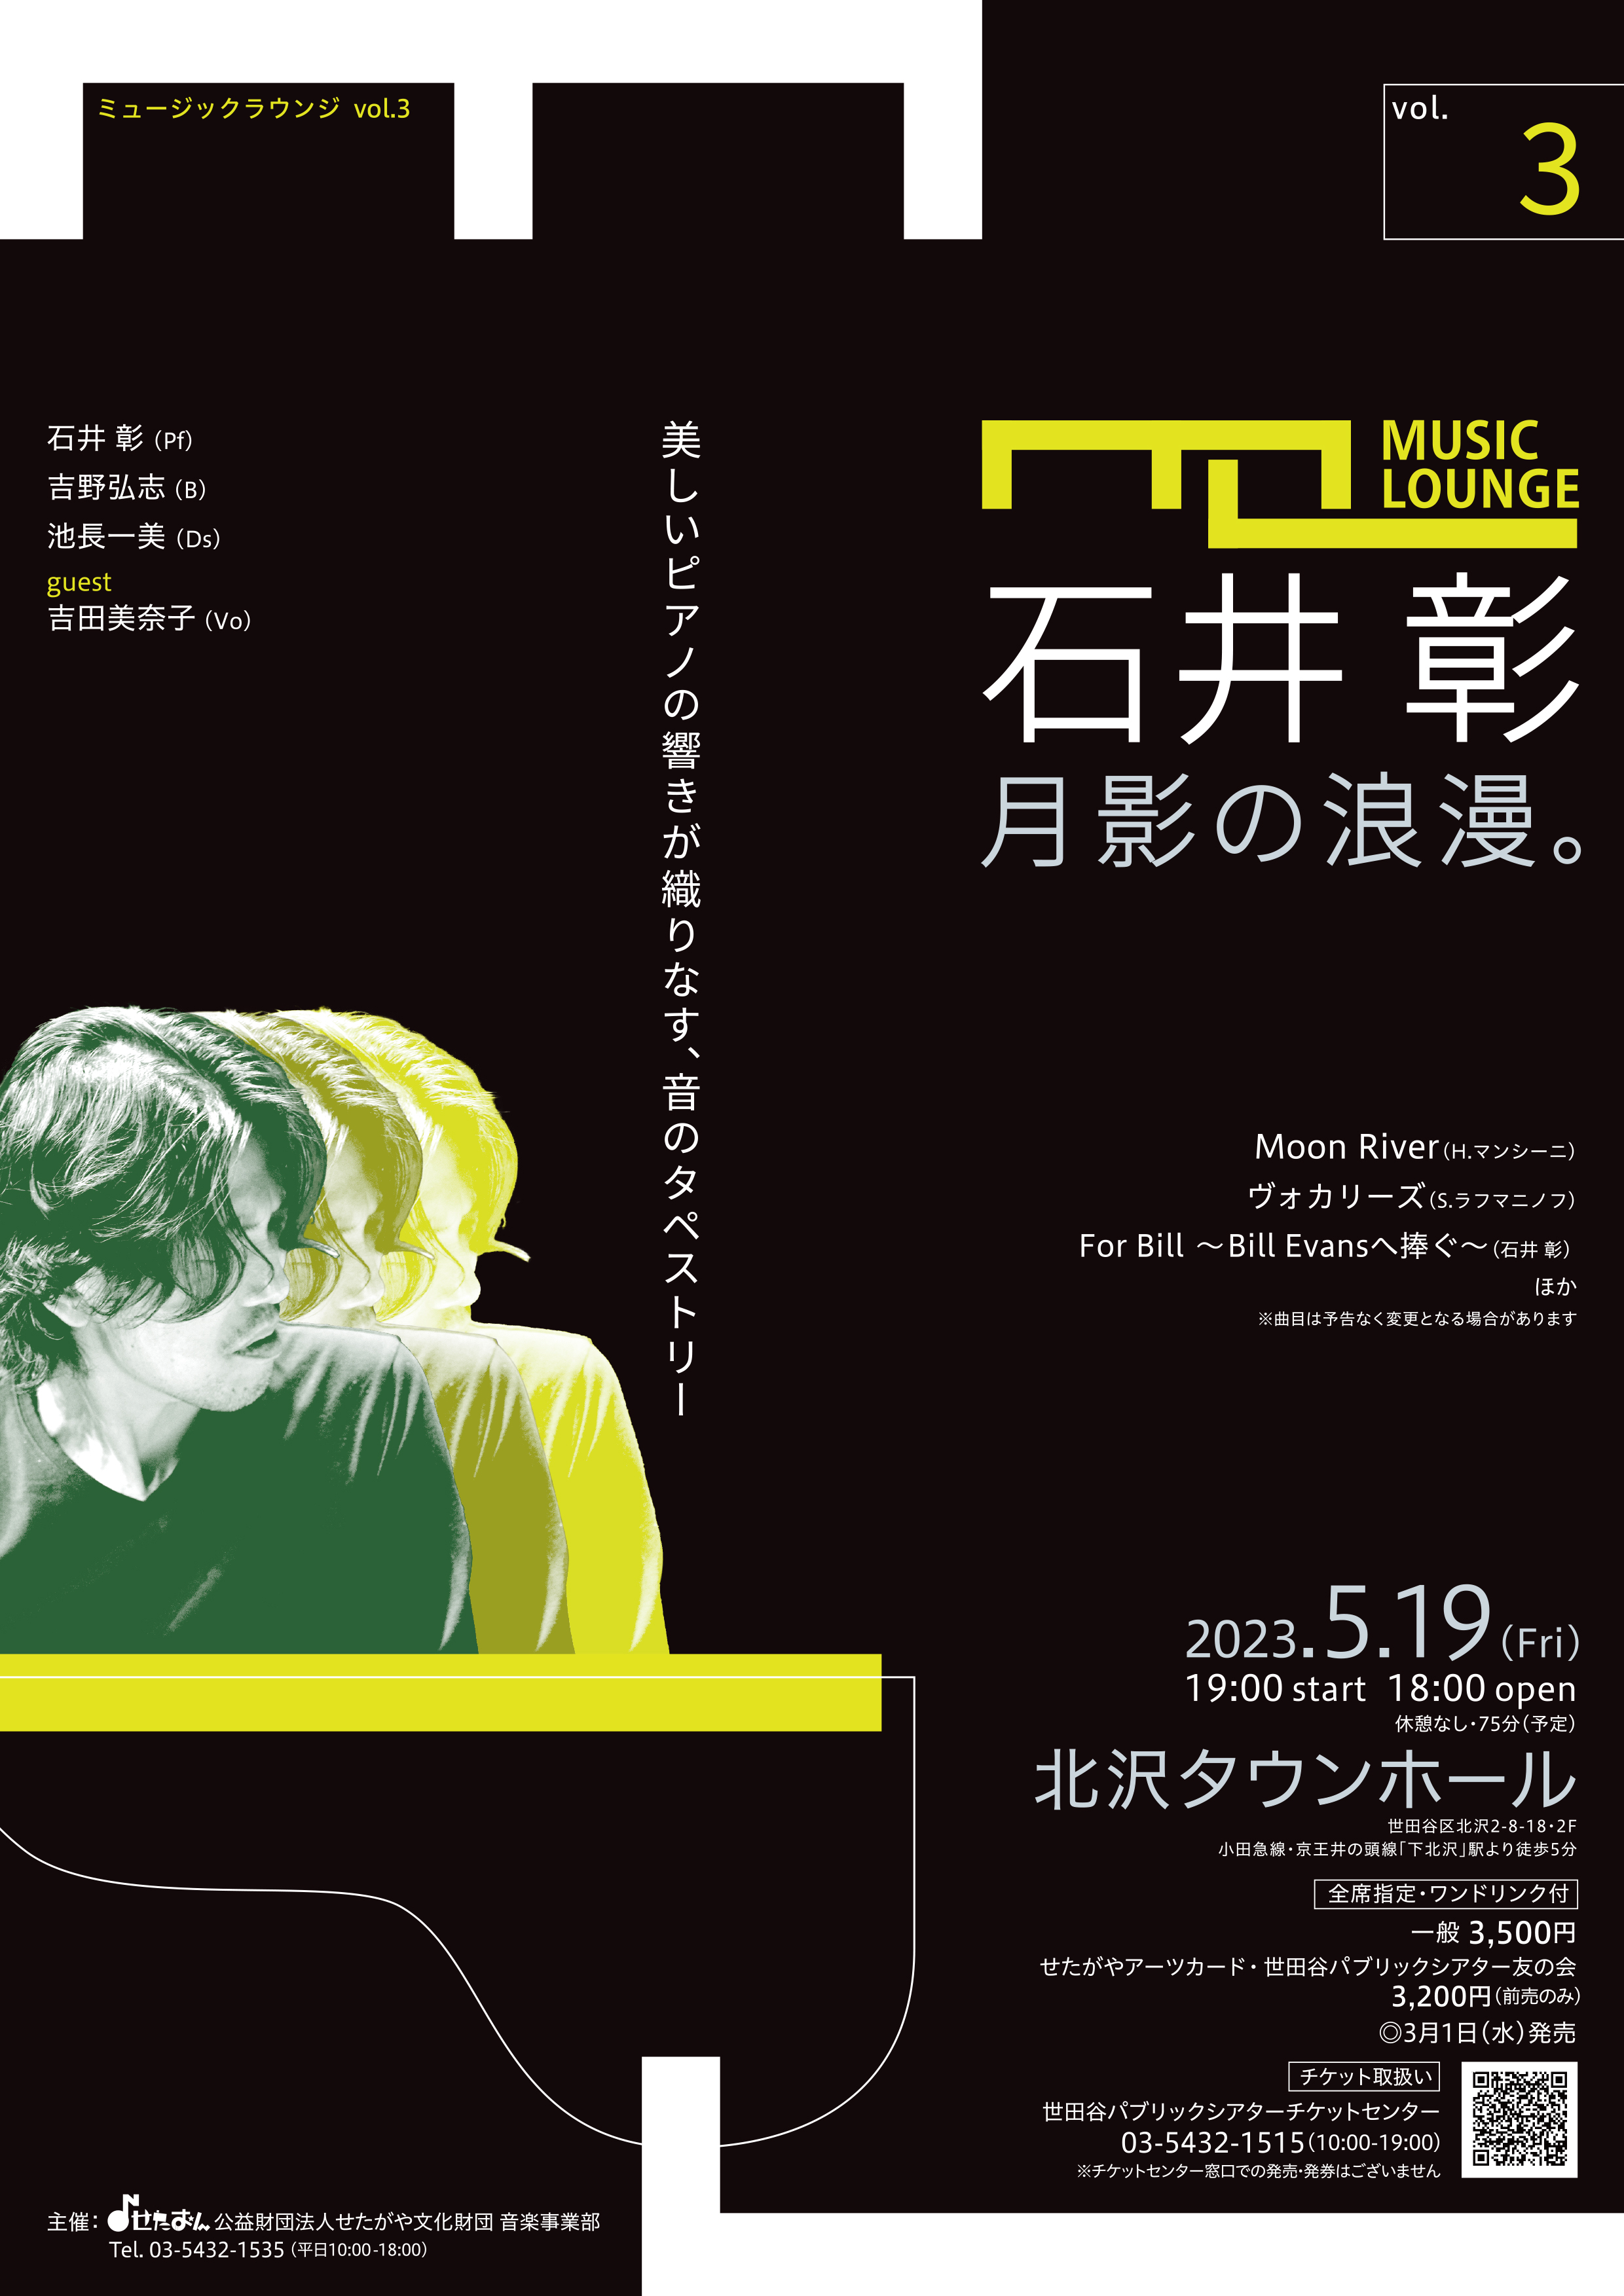 ミュージック・ラウンジ vol.3石井彰 月影の浪漫。 | イベント | 公益